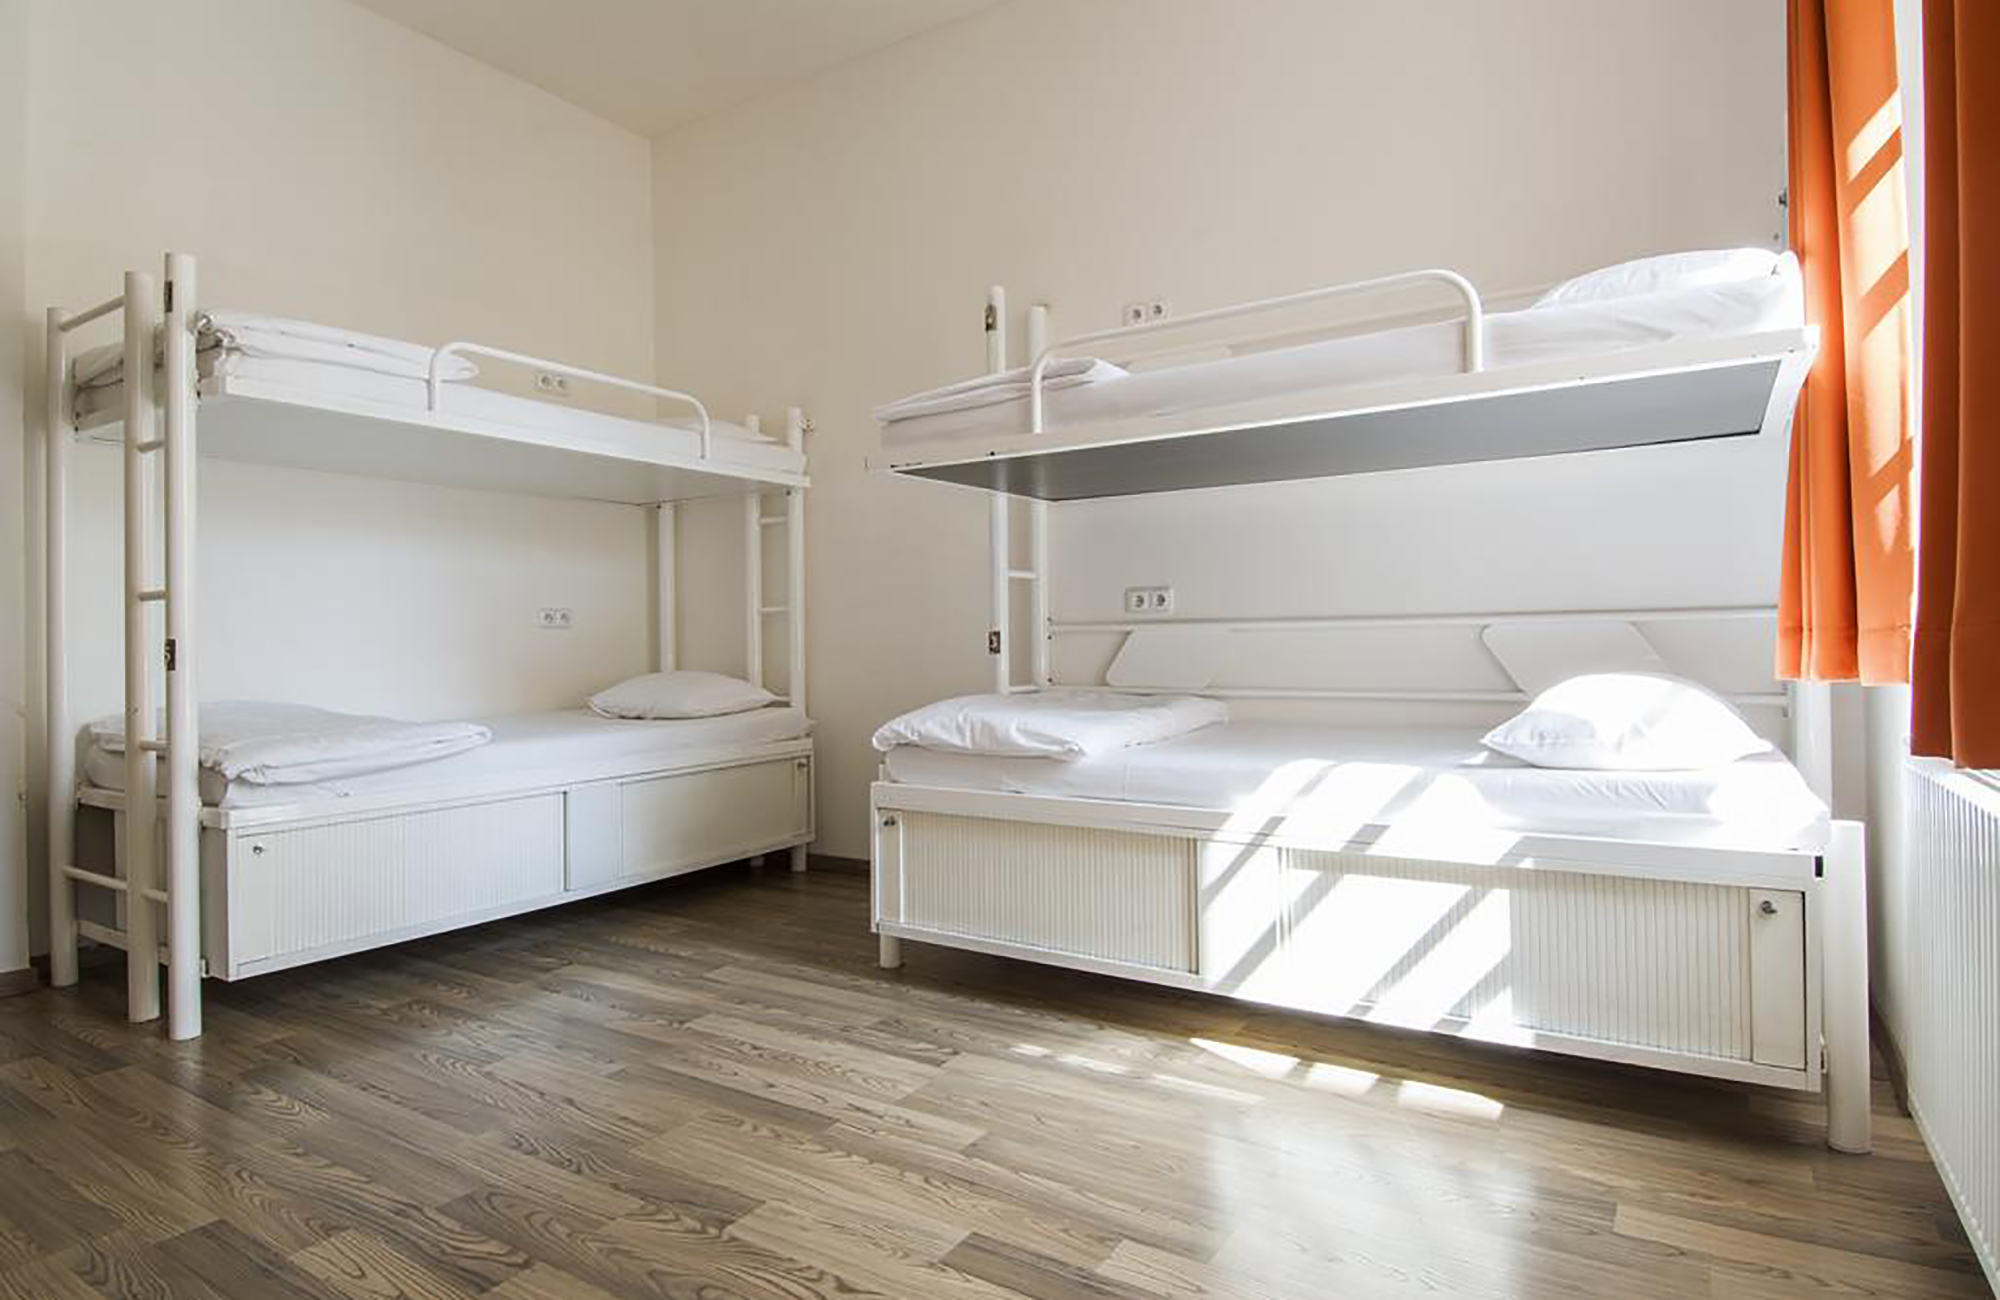 Dorm room på Safestay i Prag